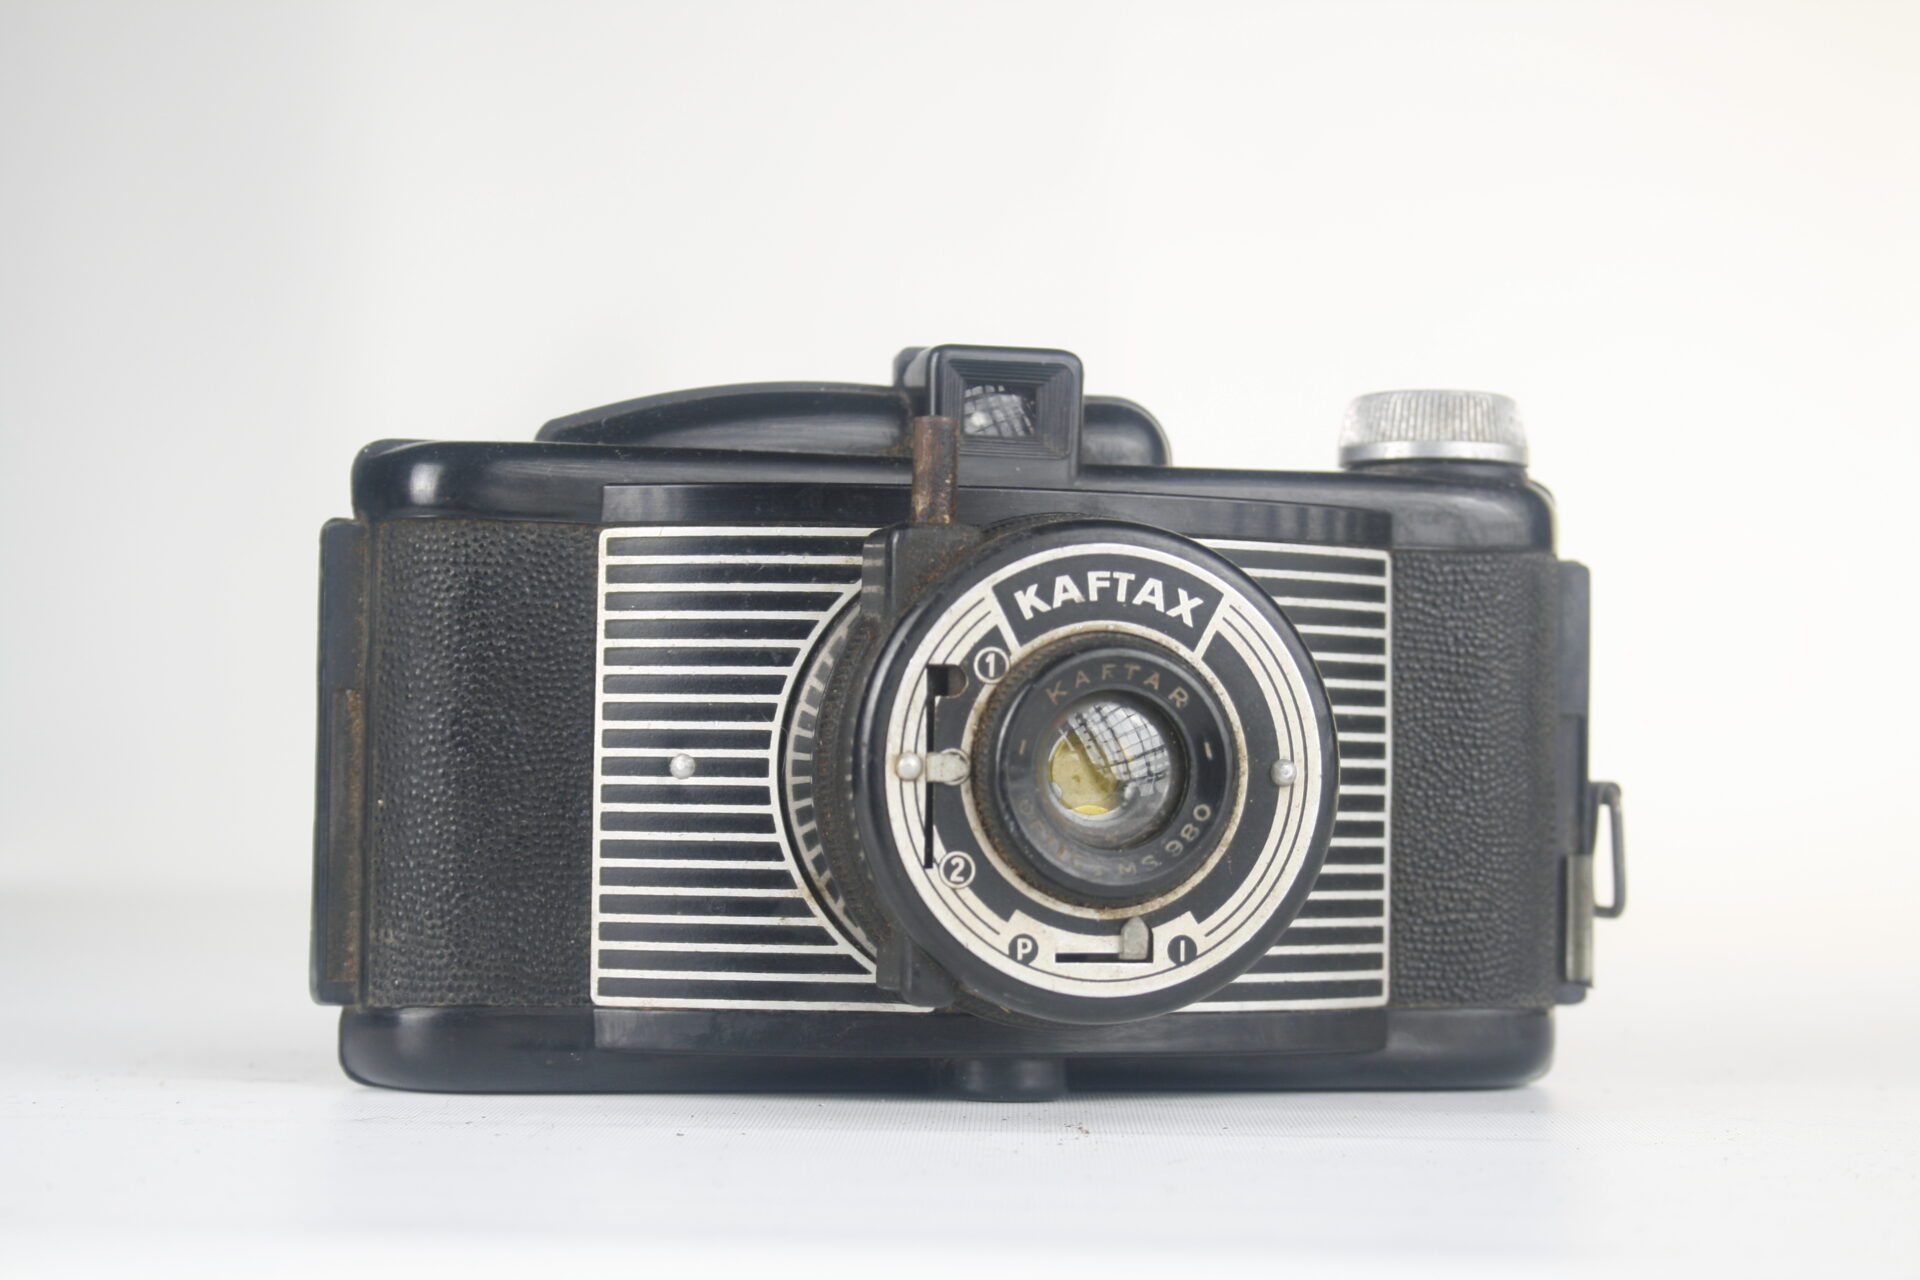 Kaftax bakkelieten camera. 620 film. 1949. Frankrijk